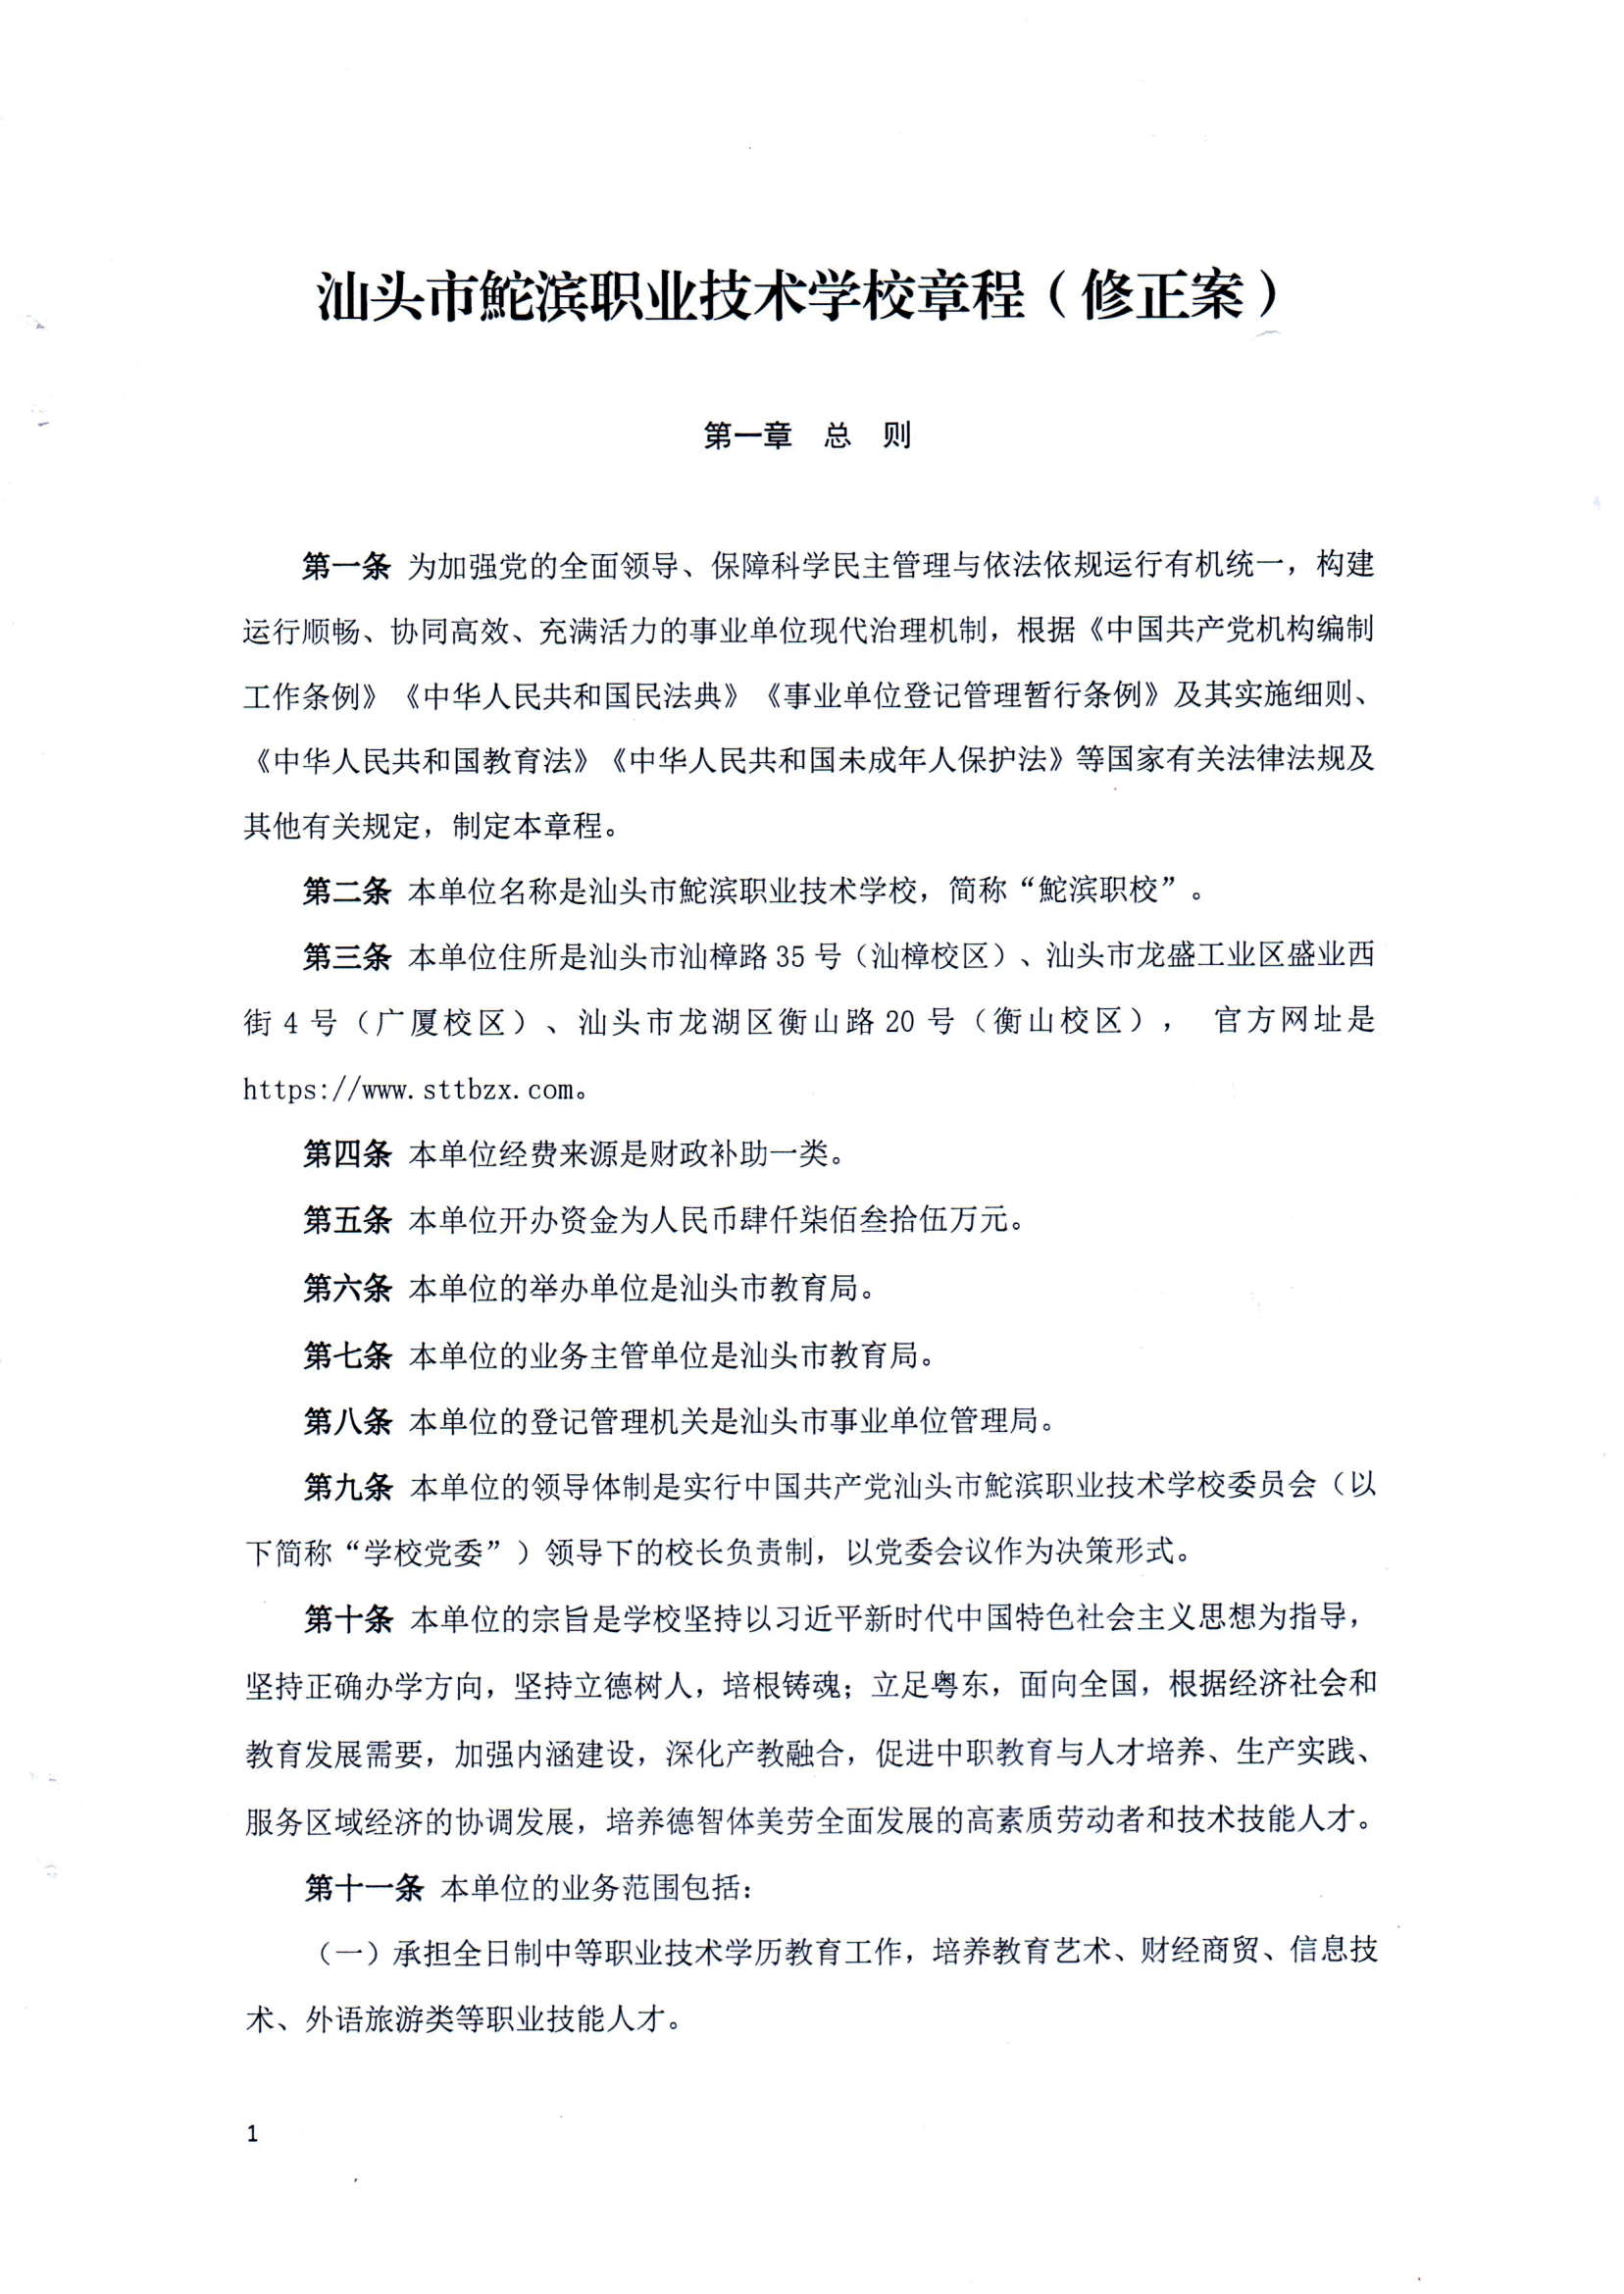 （中国）有限公司官网章程（修正案）_00.png